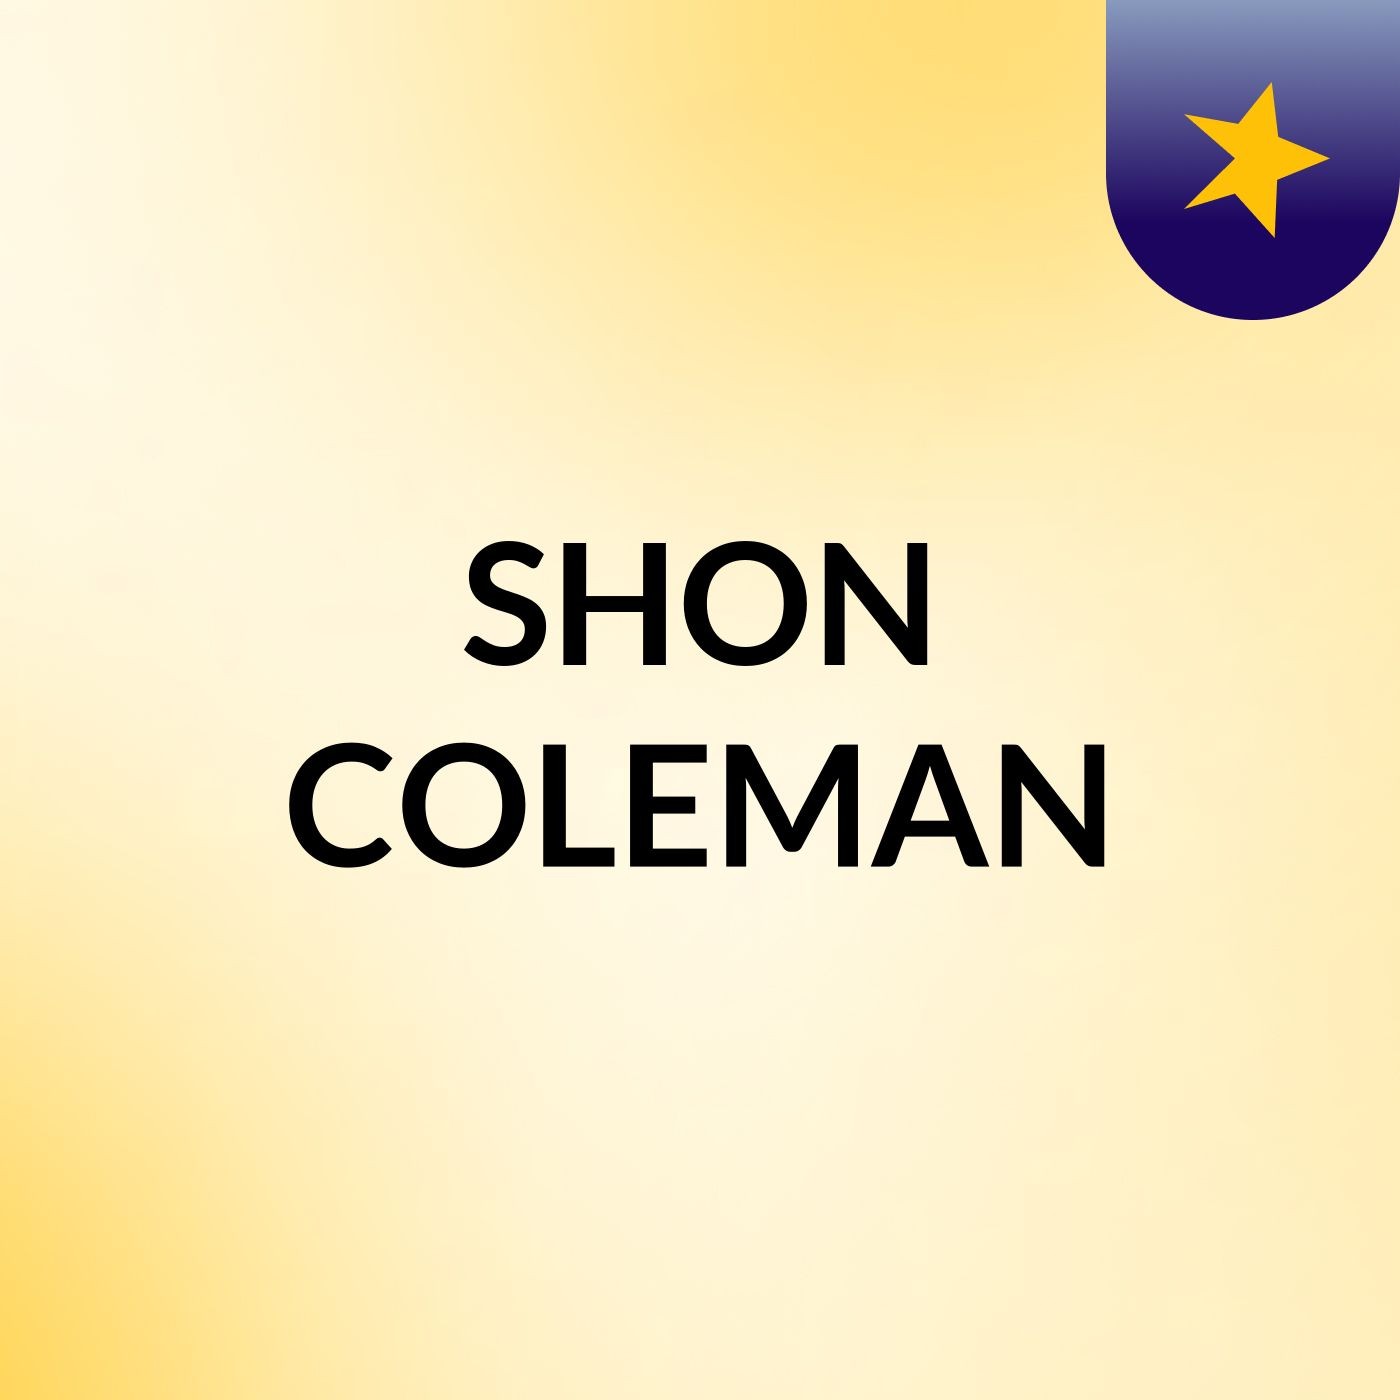 SHON COLEMAN